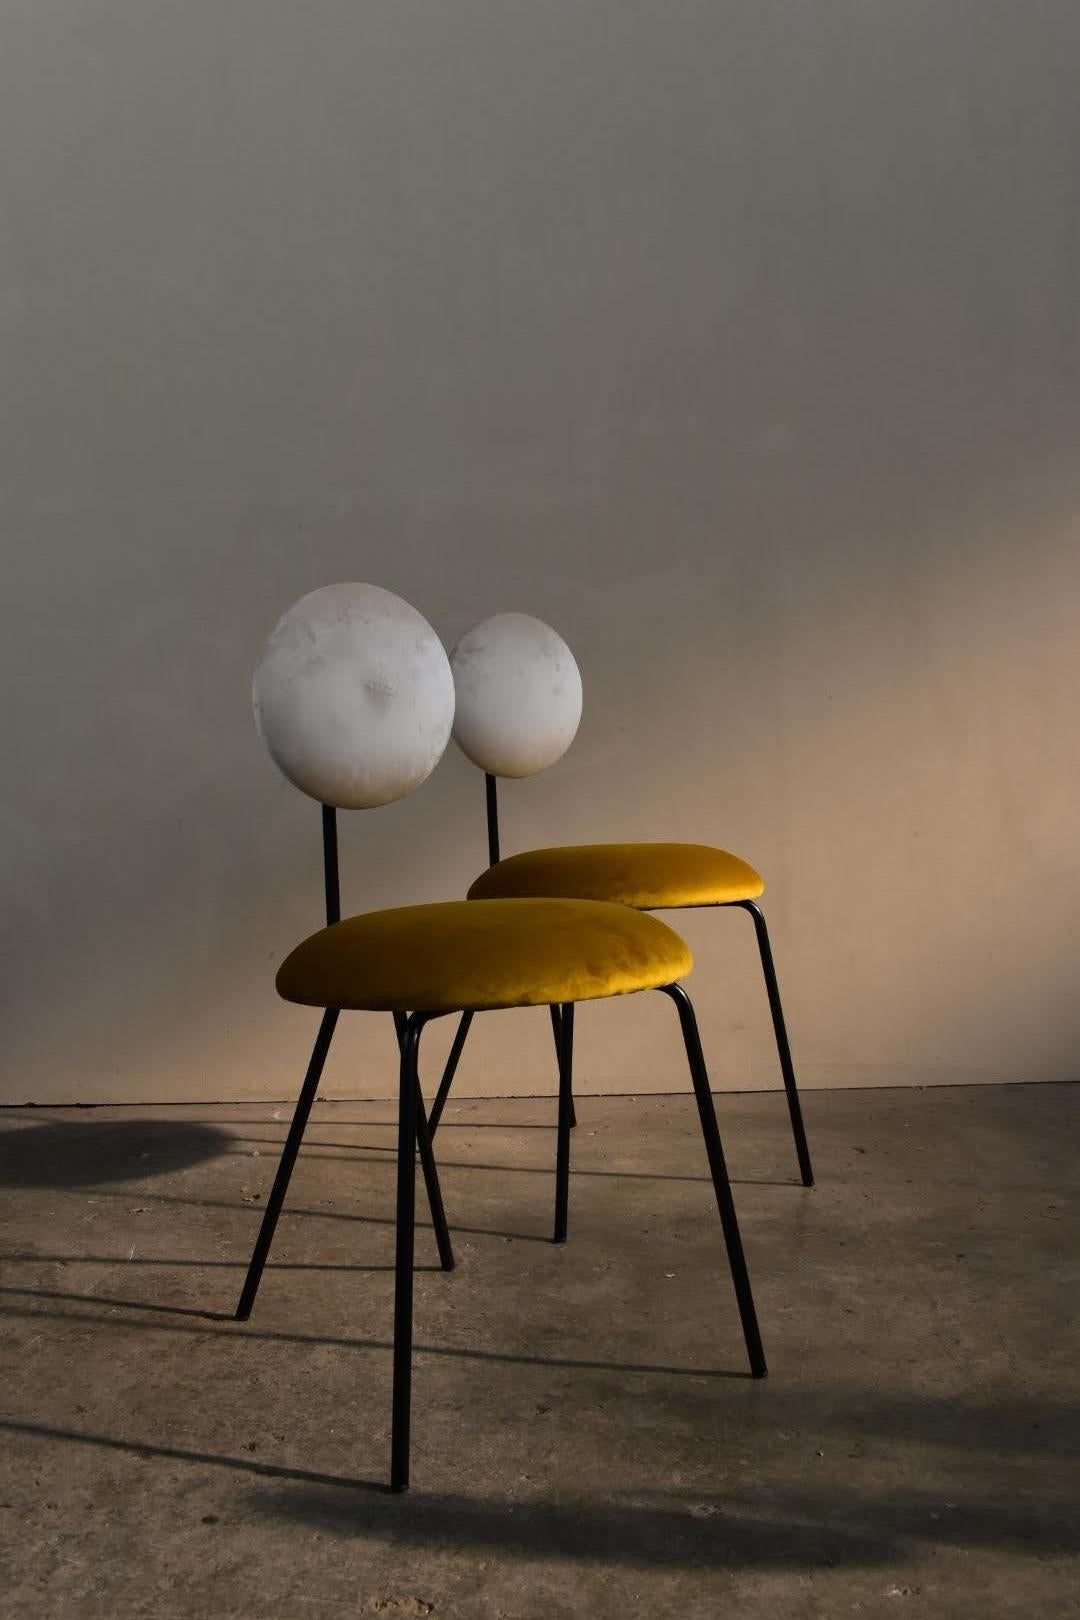 Stuhl, entworfen vom Studio Co.Arch in Mailand für equilibri-furniture 
ist ein Stuhl mit geometrischen Formen, der weiche Oberflächen zur Geltung bringt. Das Design des dünnen Metallrohrrahmens unterstreicht den Samt der Polsterung und die weiche